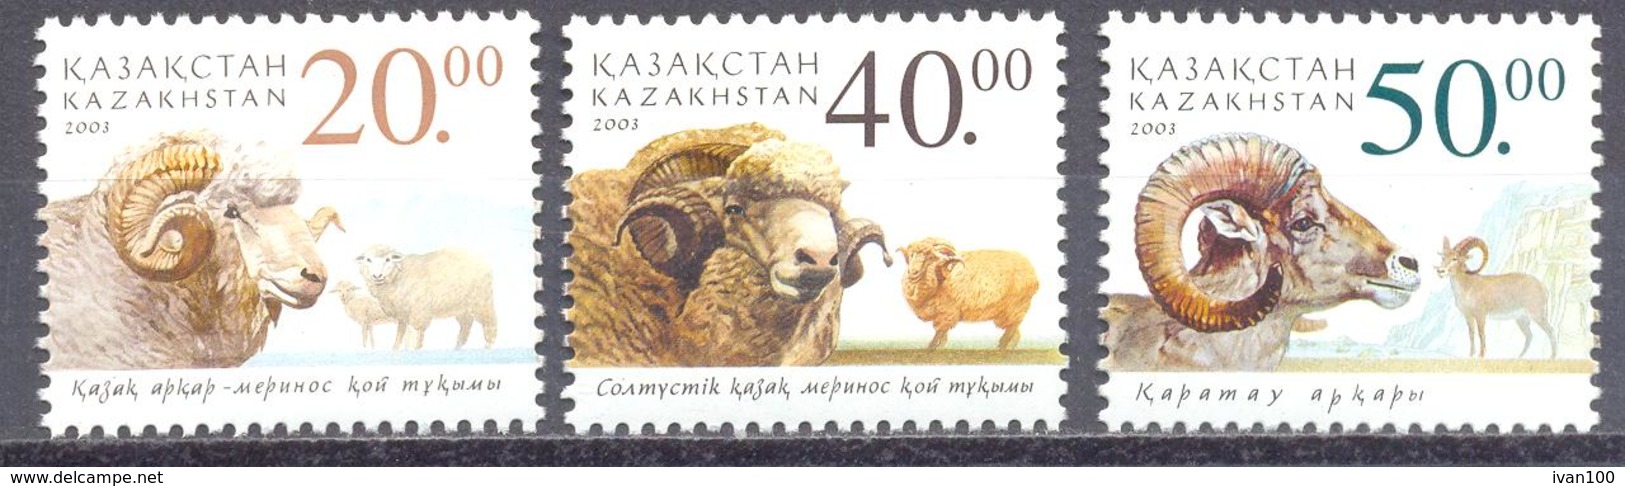 2003. Kazakhstan, Sheeps, 3v, Mint/** - Kazajstán